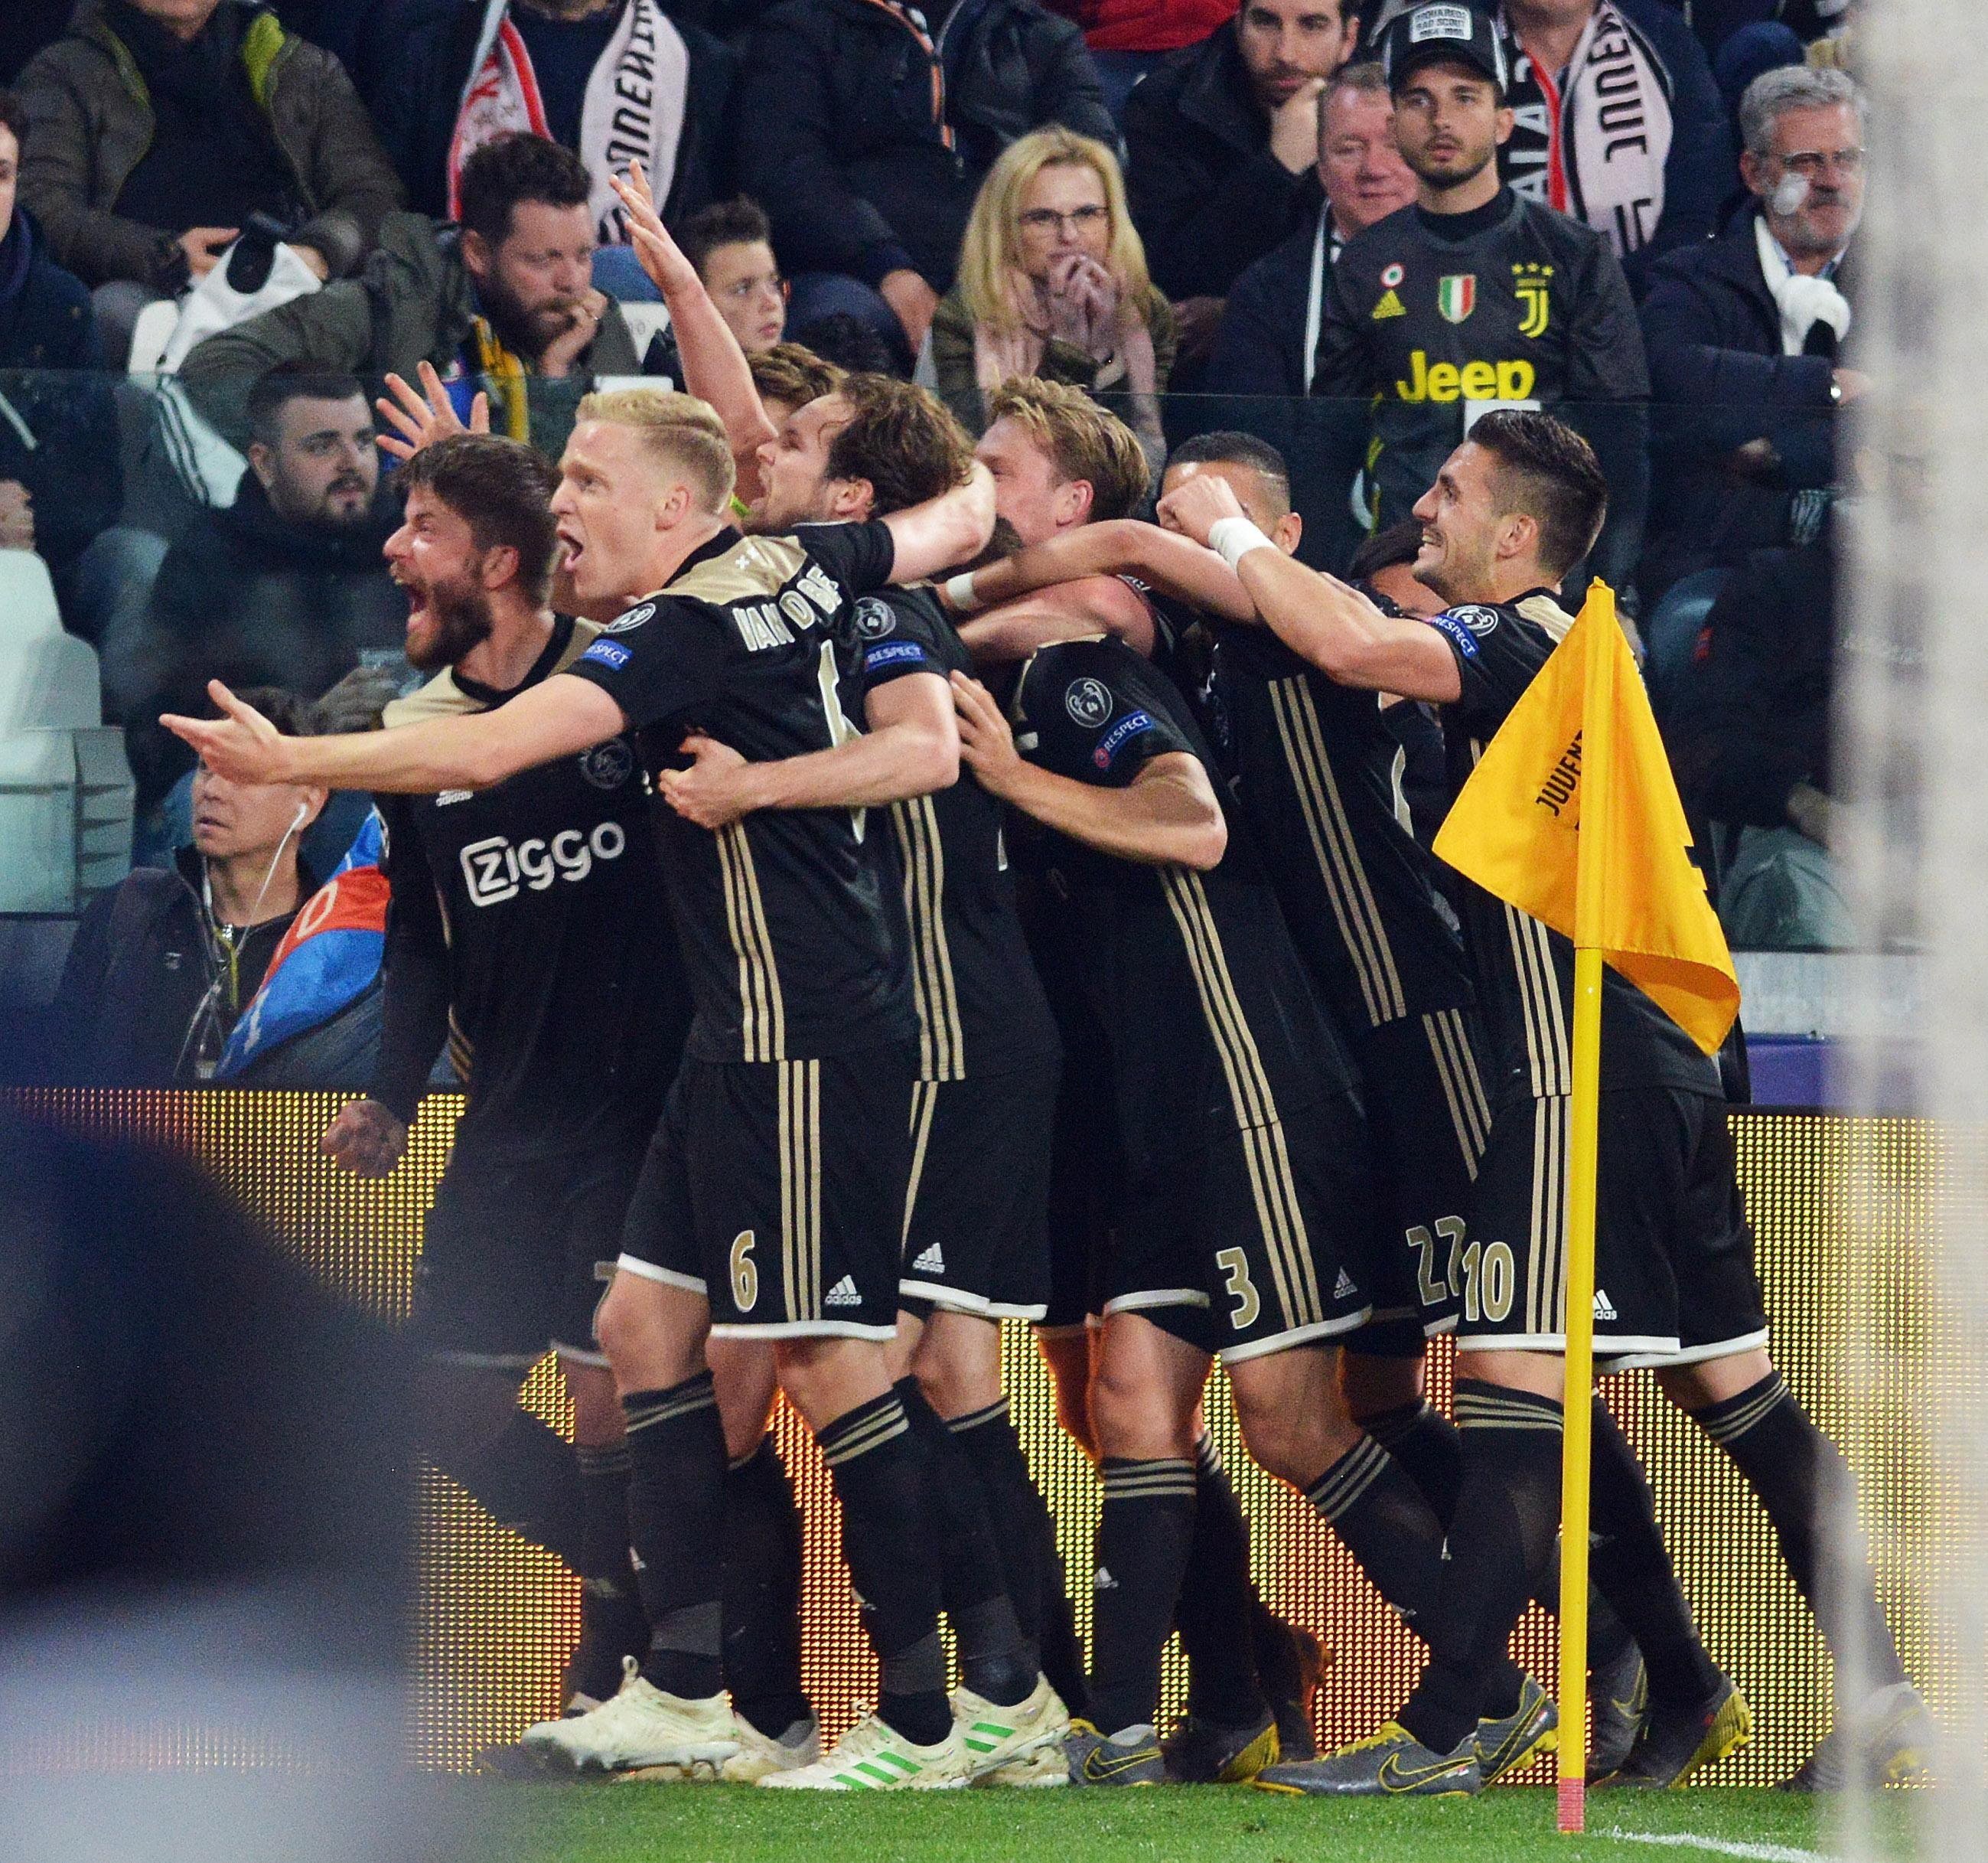 L'Ajax segueix fent història i elimina la Juventus de Cristiano